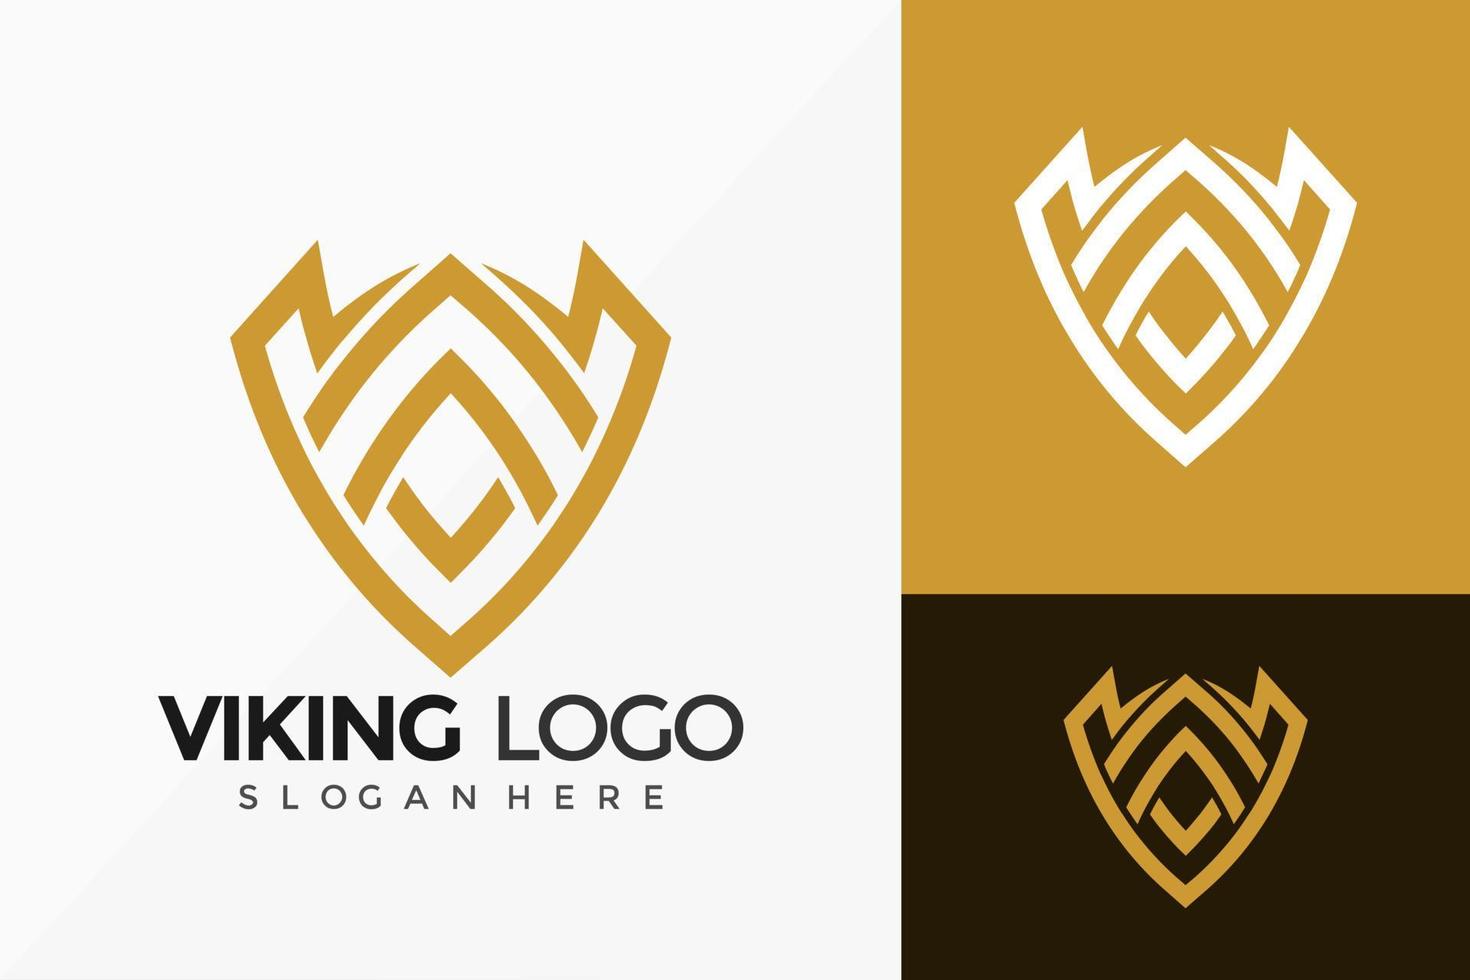 sköld viking emblem logotyp vektor design. abstrakt emblem, designkoncept, logotyper, logotypelement för mall.